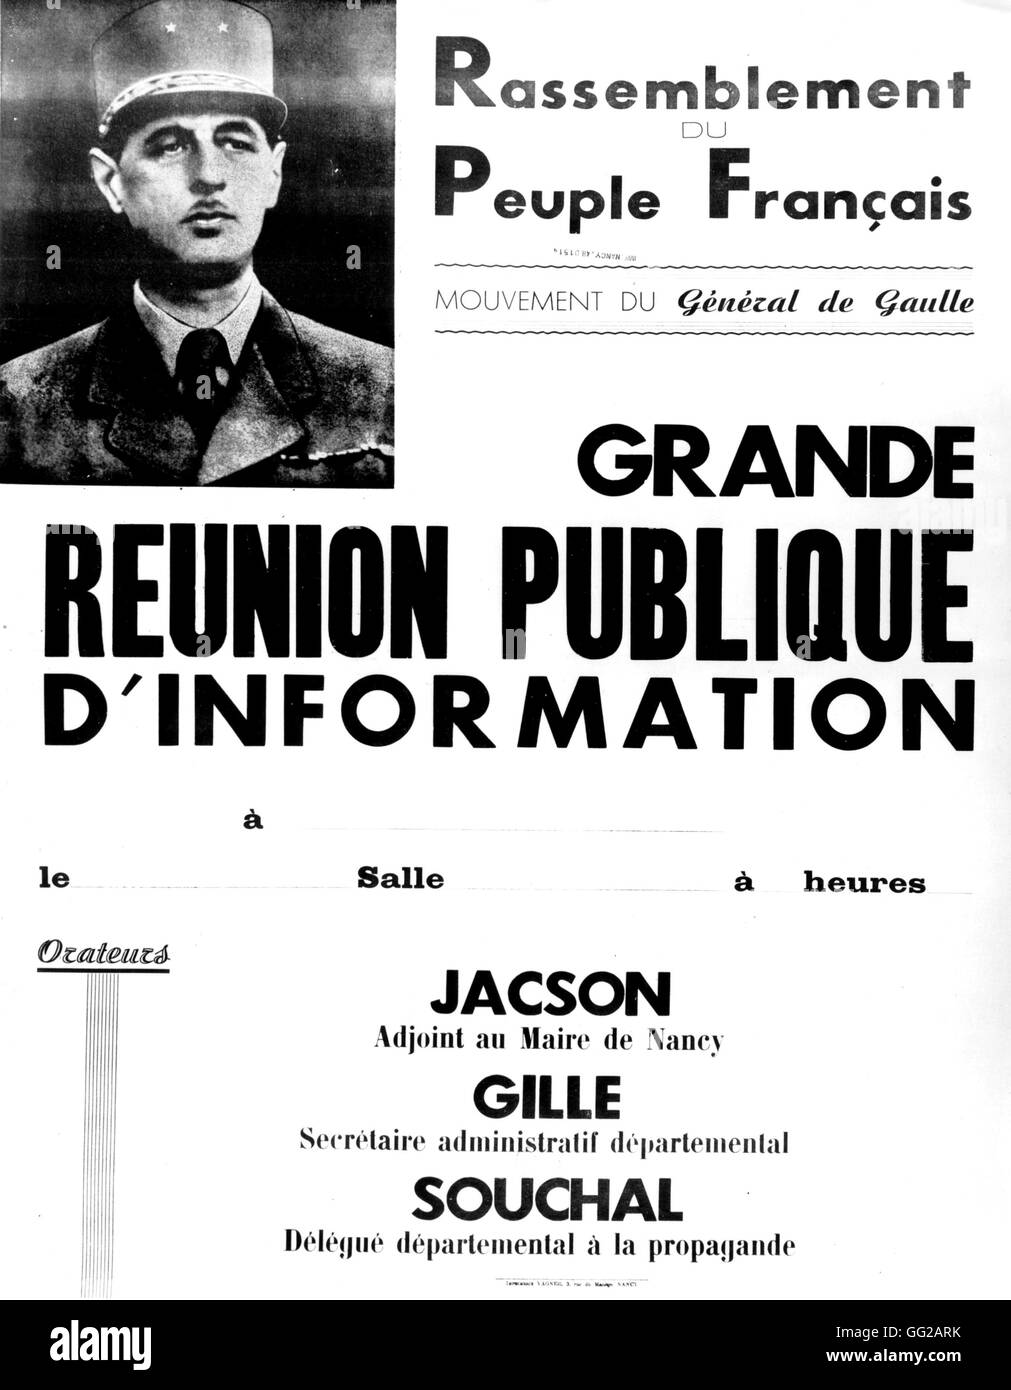 R.P.F. poster (De Gaulle della circolazione). Grande riunione pubblica per informazioni 1947 Francia Foto Stock